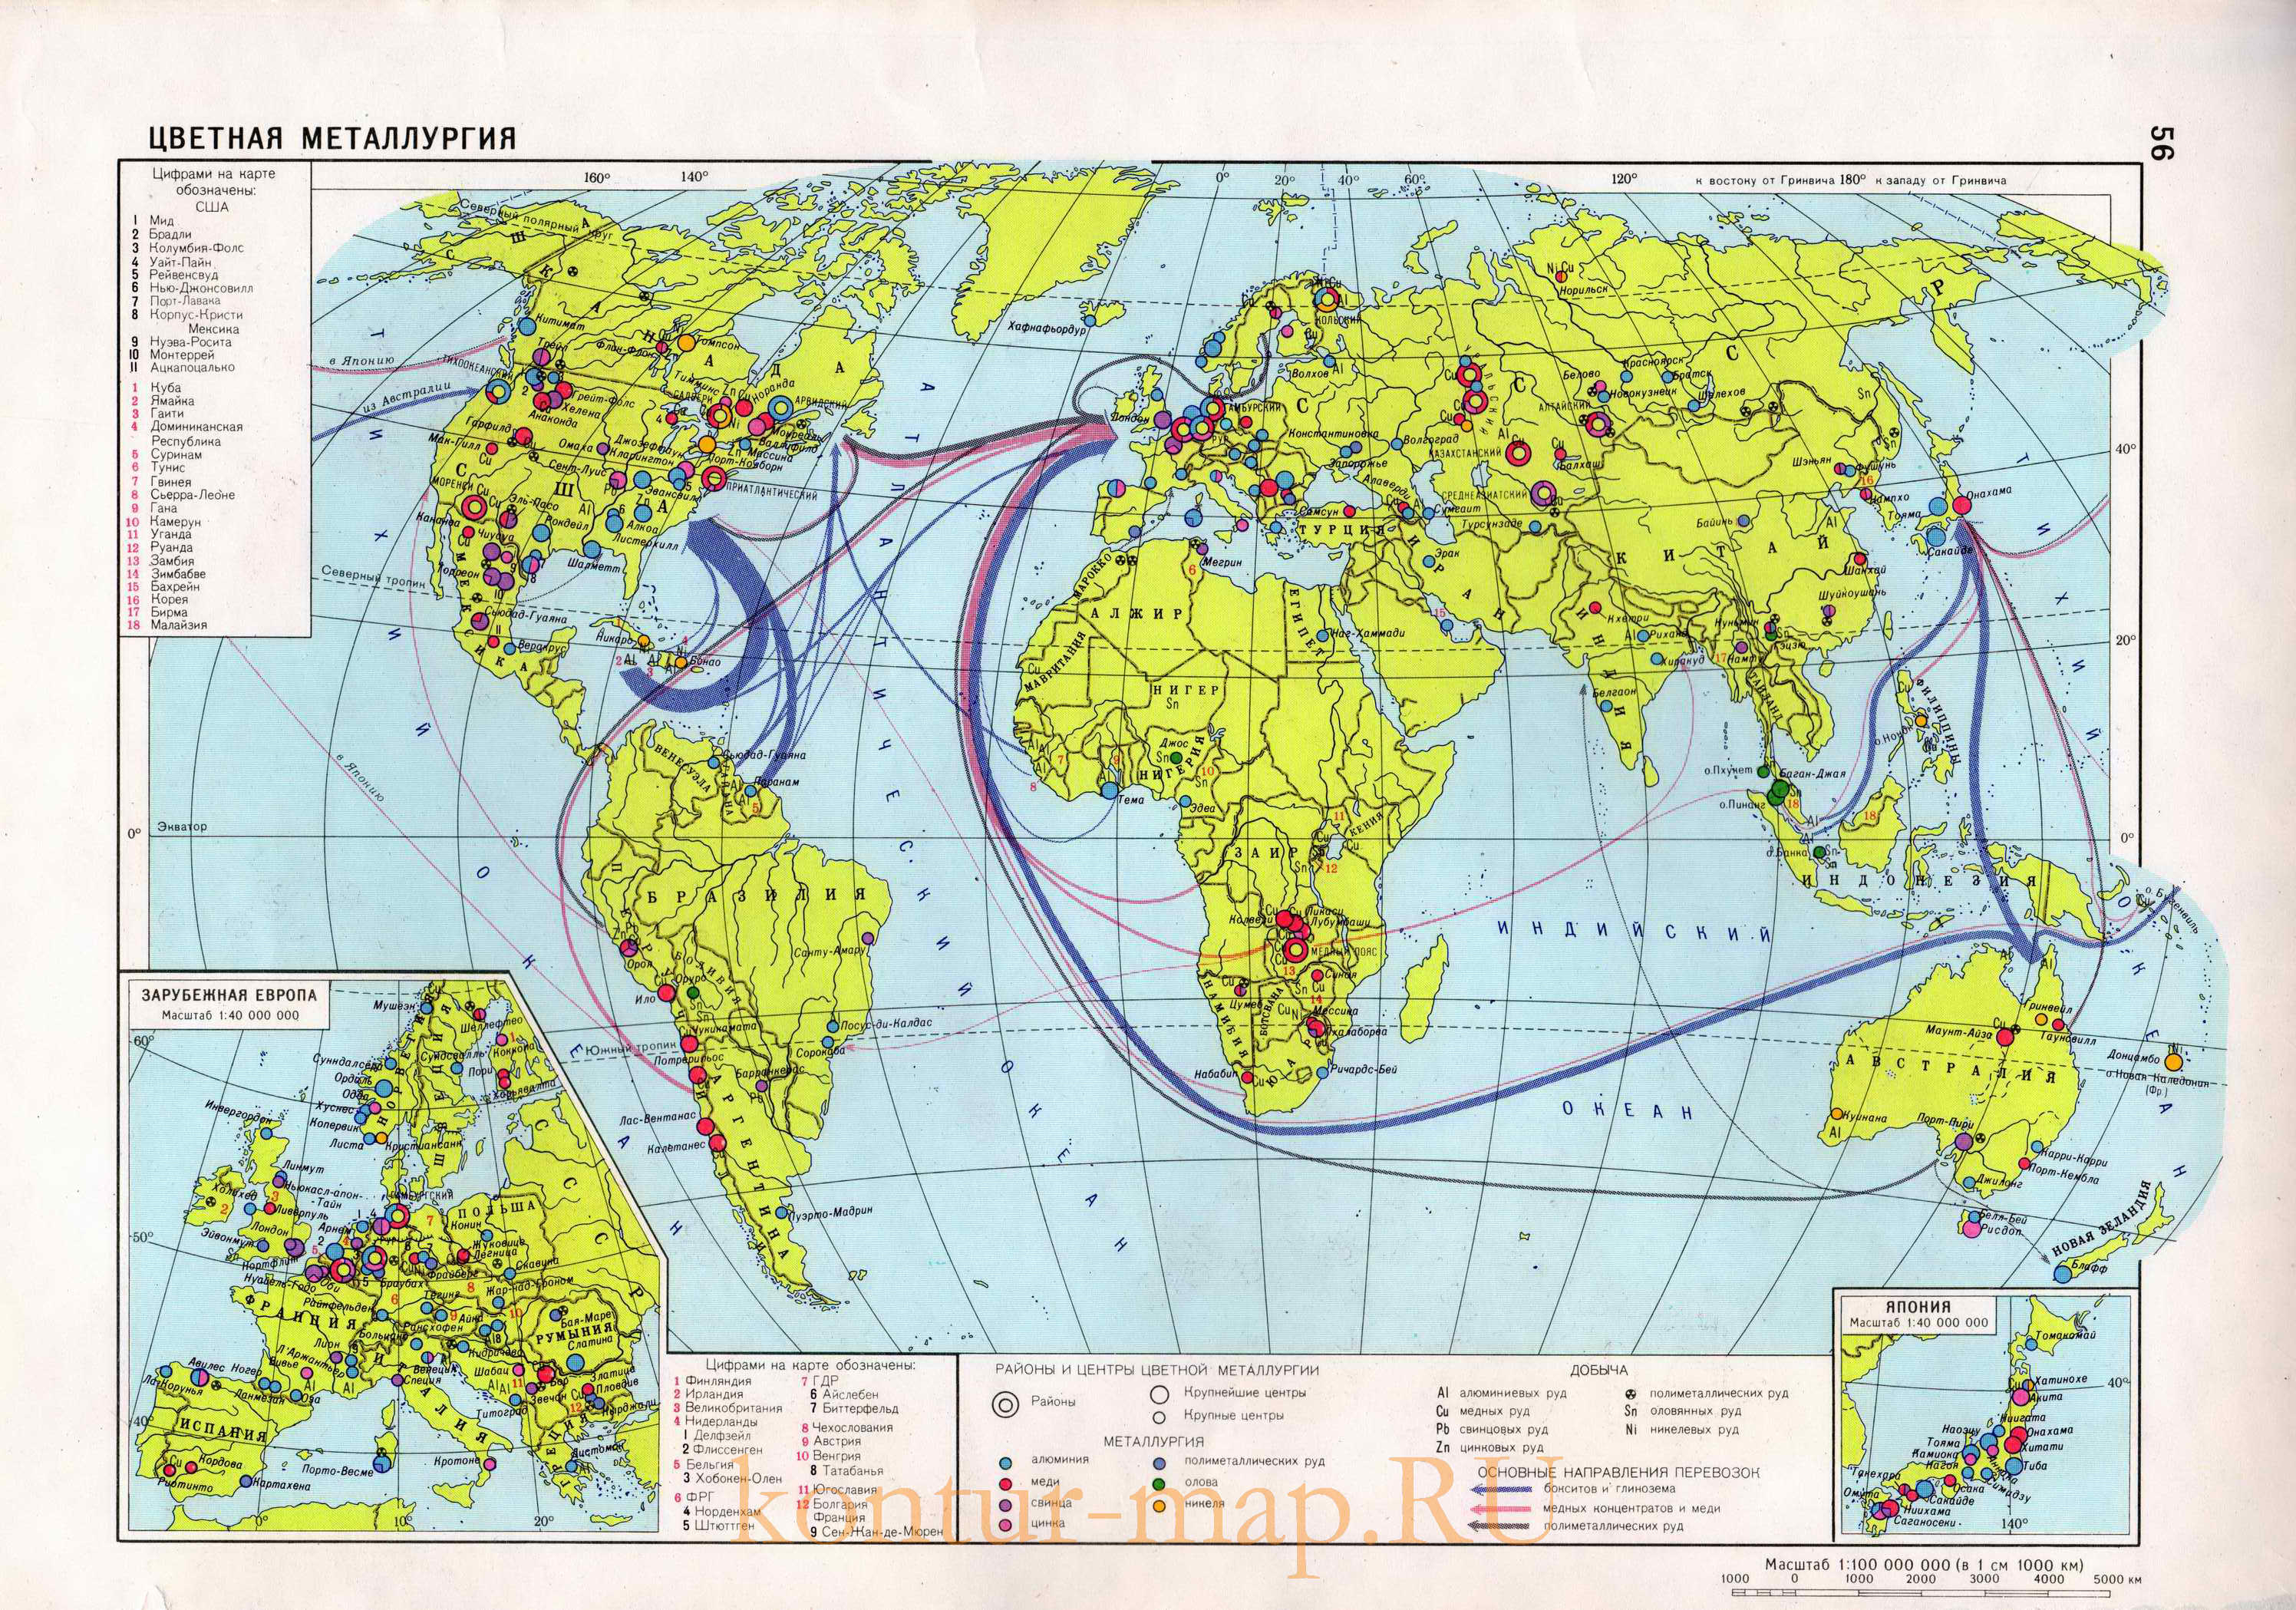 Экономическая карта мира - цветная металлургия. Географический атлас учителя - производство и экспорт продукции цветной металлургии на карте мира, A0 - 